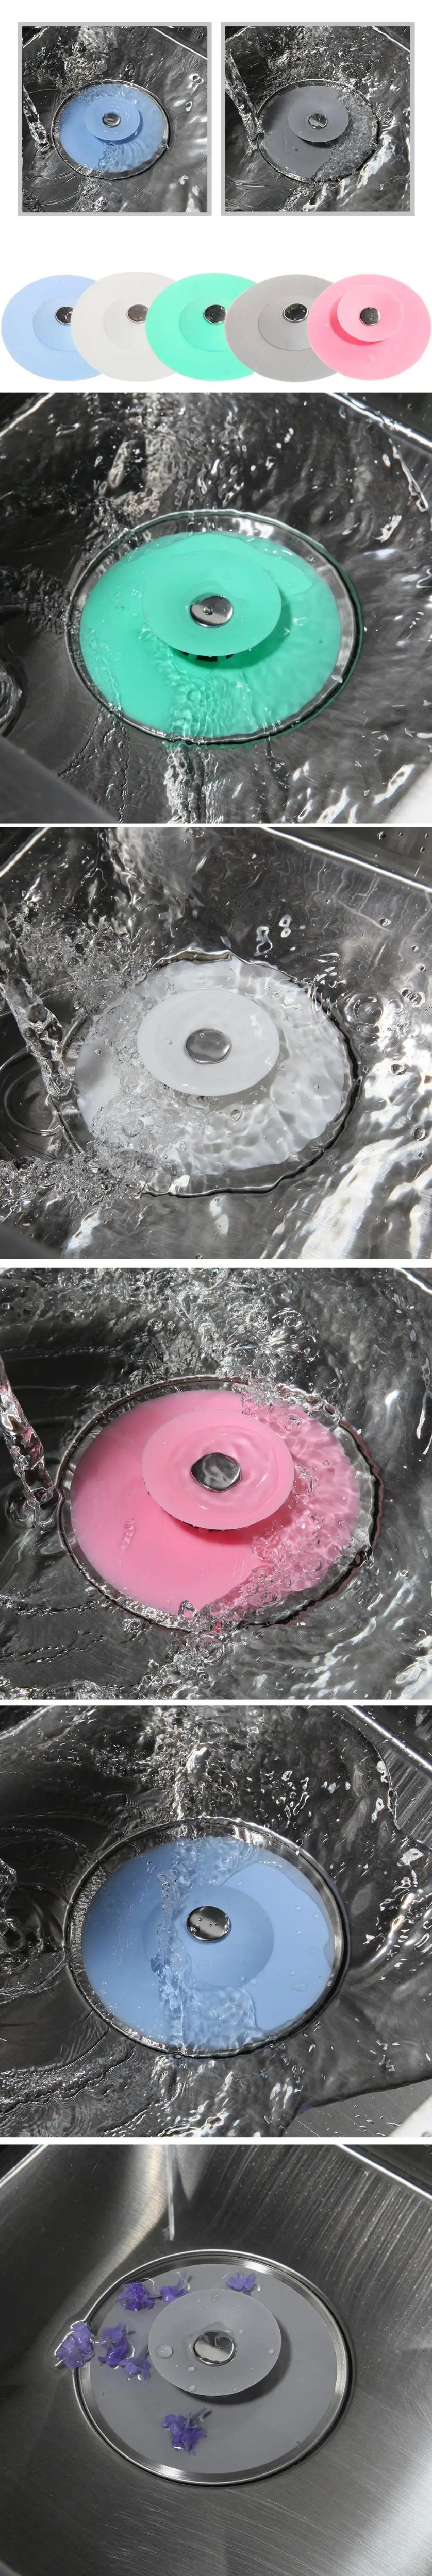 Ванная комната и кухня раковина всплывающие стоки Seau Nettoyage Sol 5 цветов стоки резиновый пол слив прачечная воды стопор инструмент Туалет